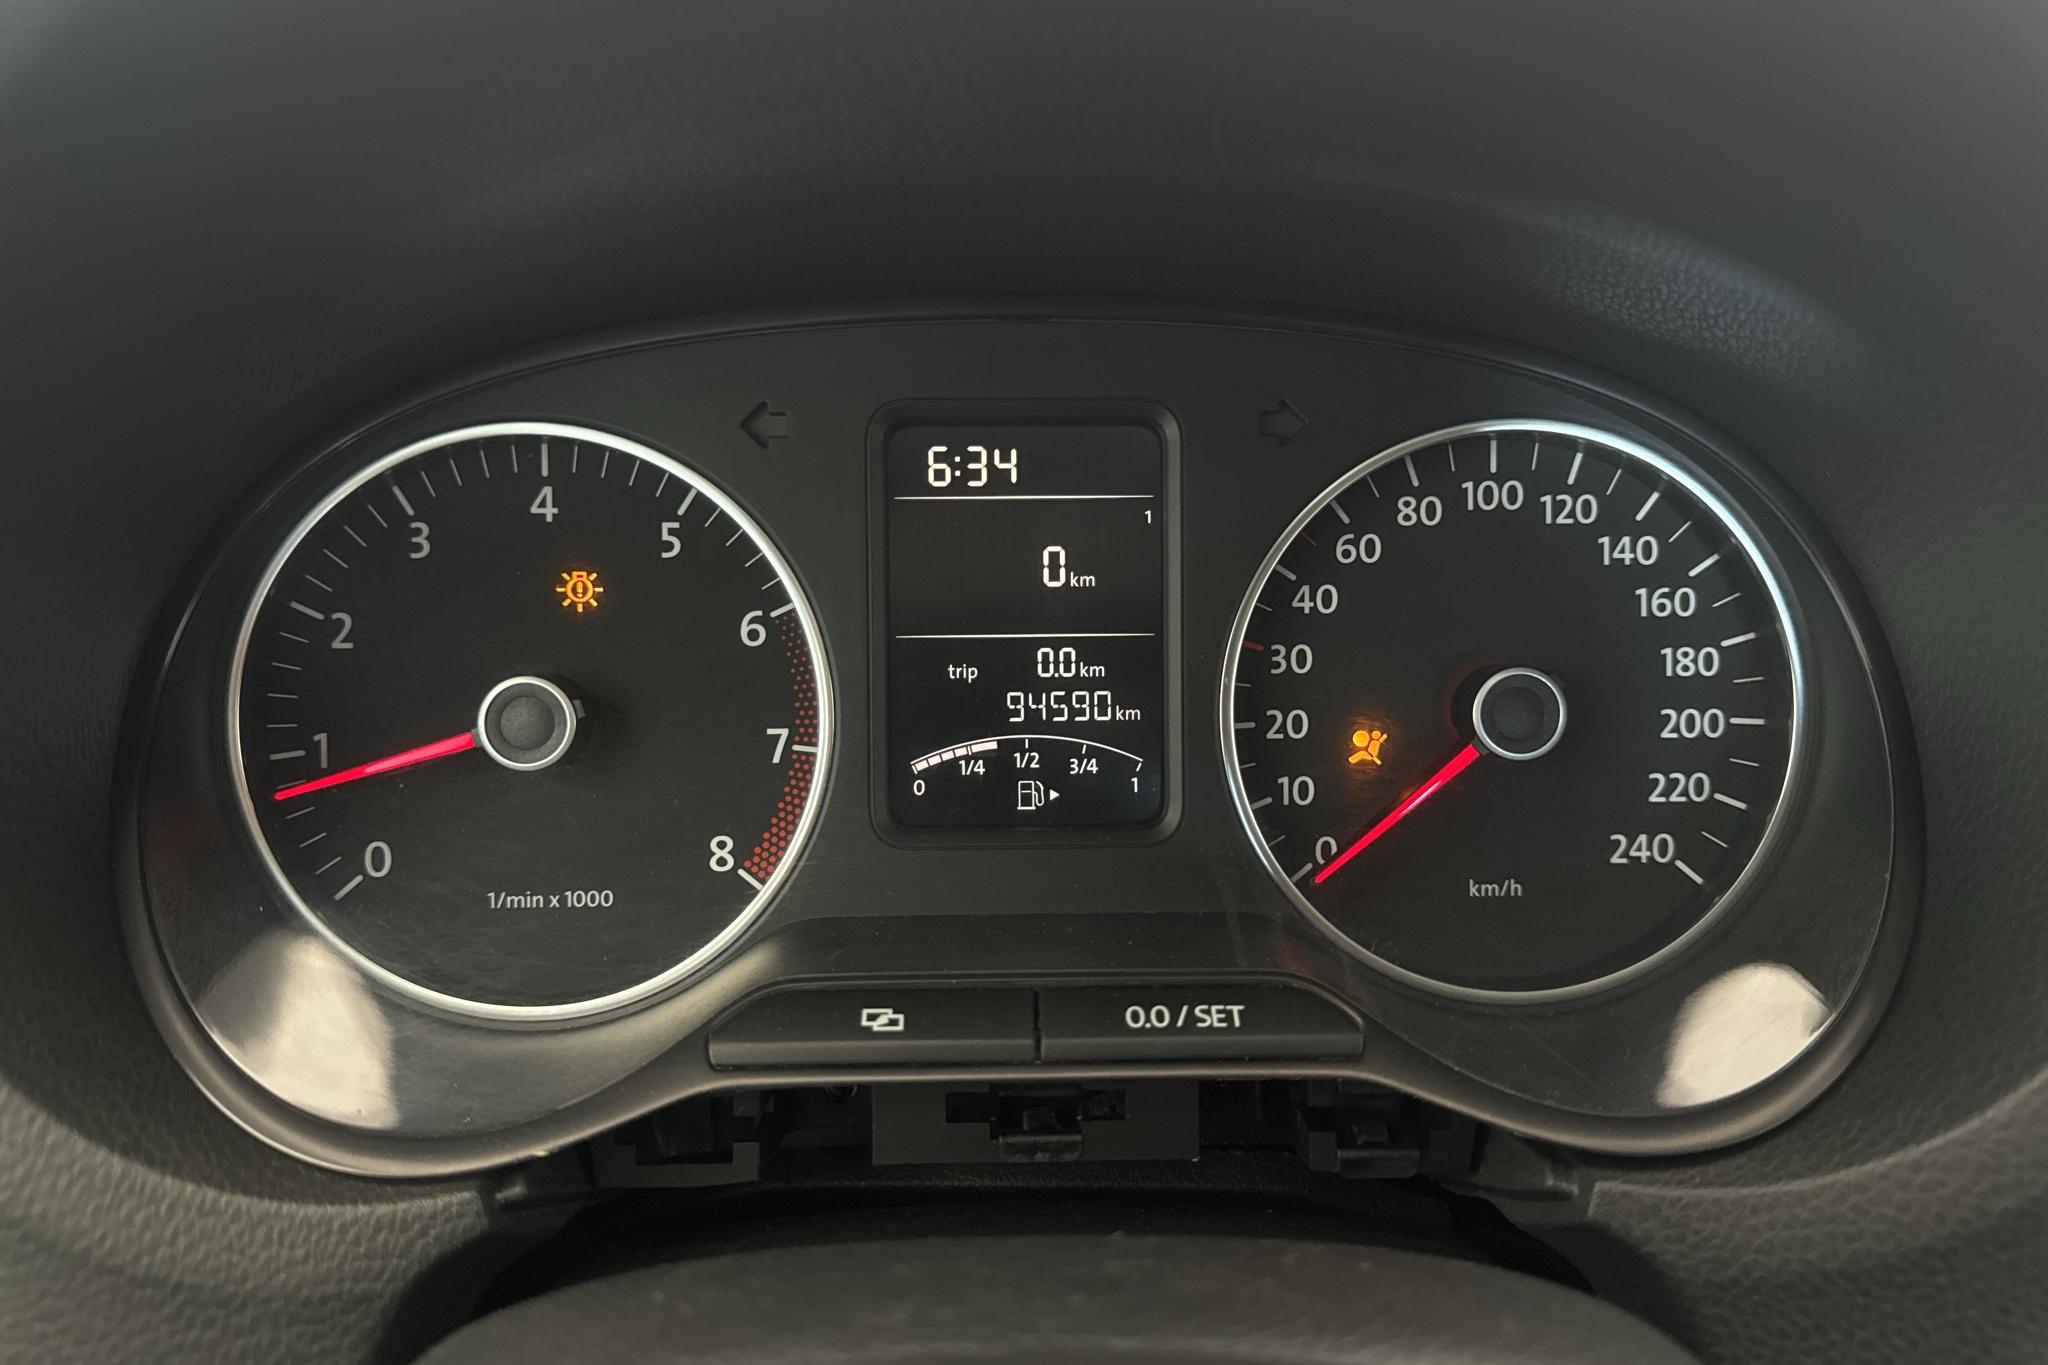 VW Polo 1.4 5dr (85hk) - 94 590 km - Manualna - czerwony - 2011